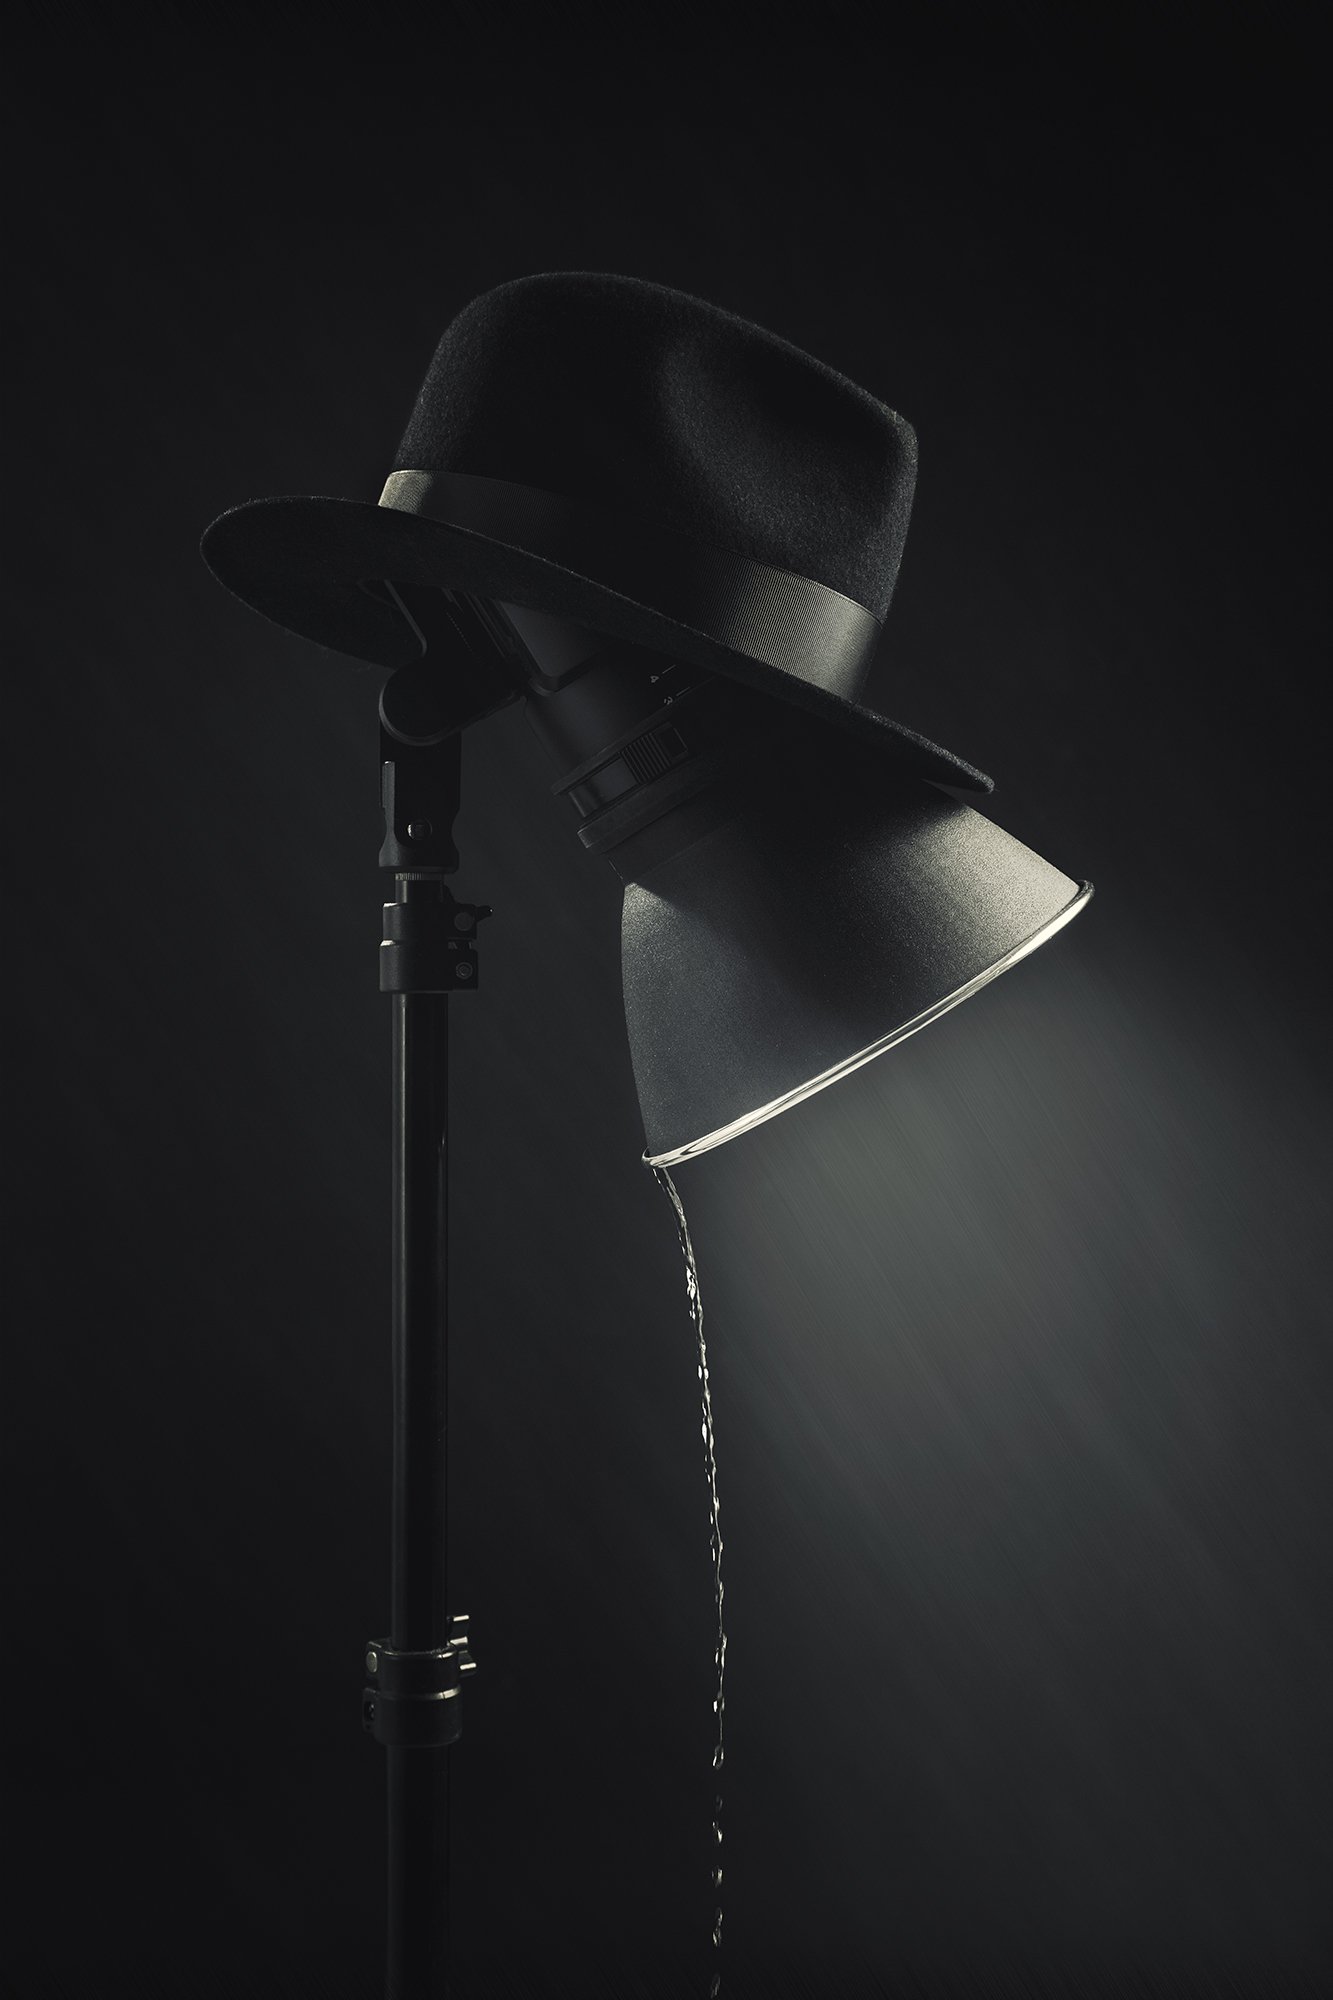 шляпа, штатив, лампа, дождь, свет, вспышка, Николай Сизиков